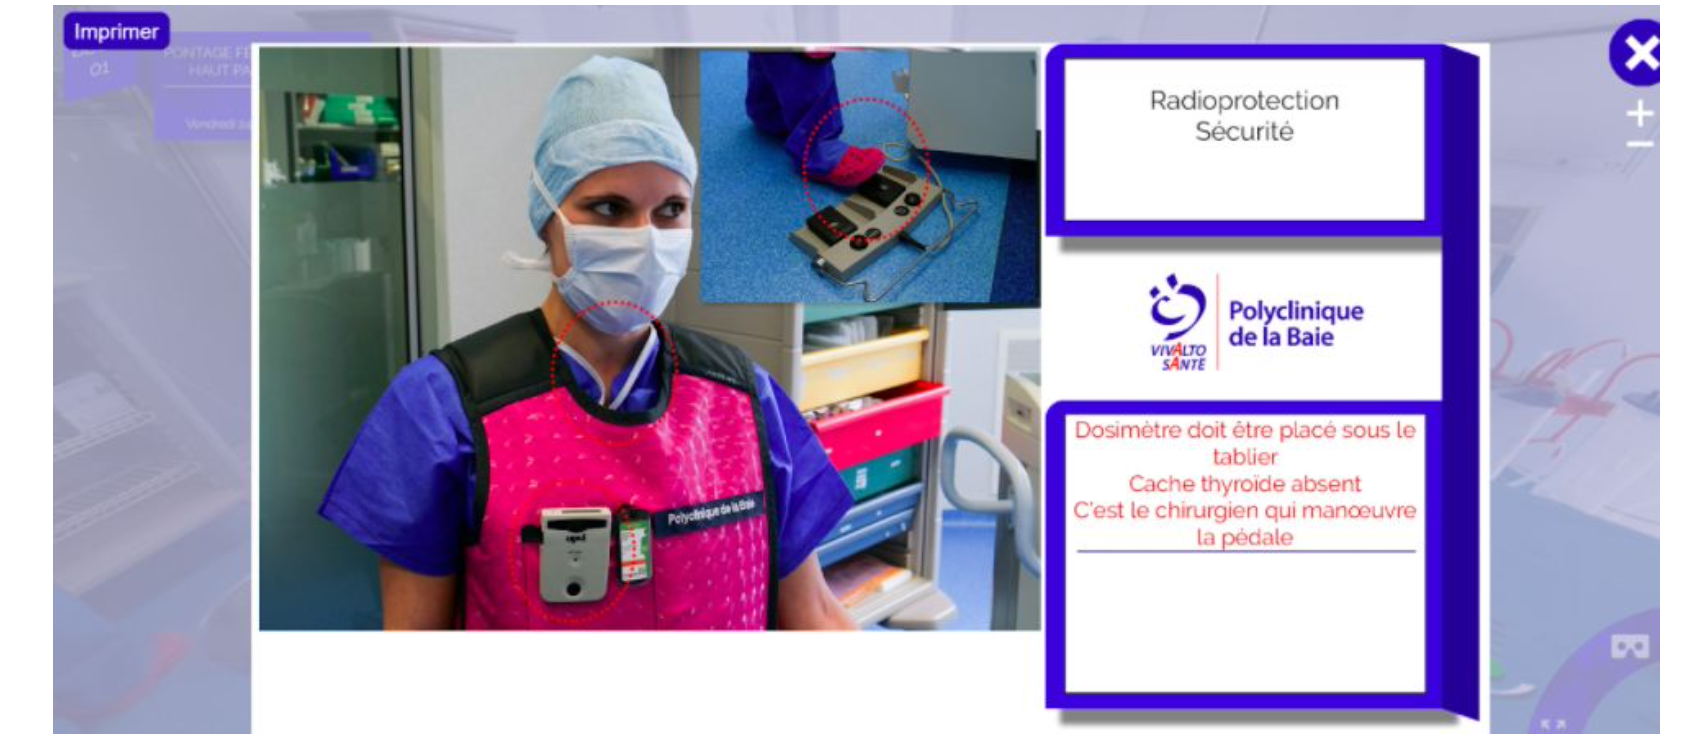 L’Hôpital Privé de la Baie dans la Manche, 1e​r établissement en France à intégrer la réalité virtuelle pour prévenir les risques au bloc opératoire